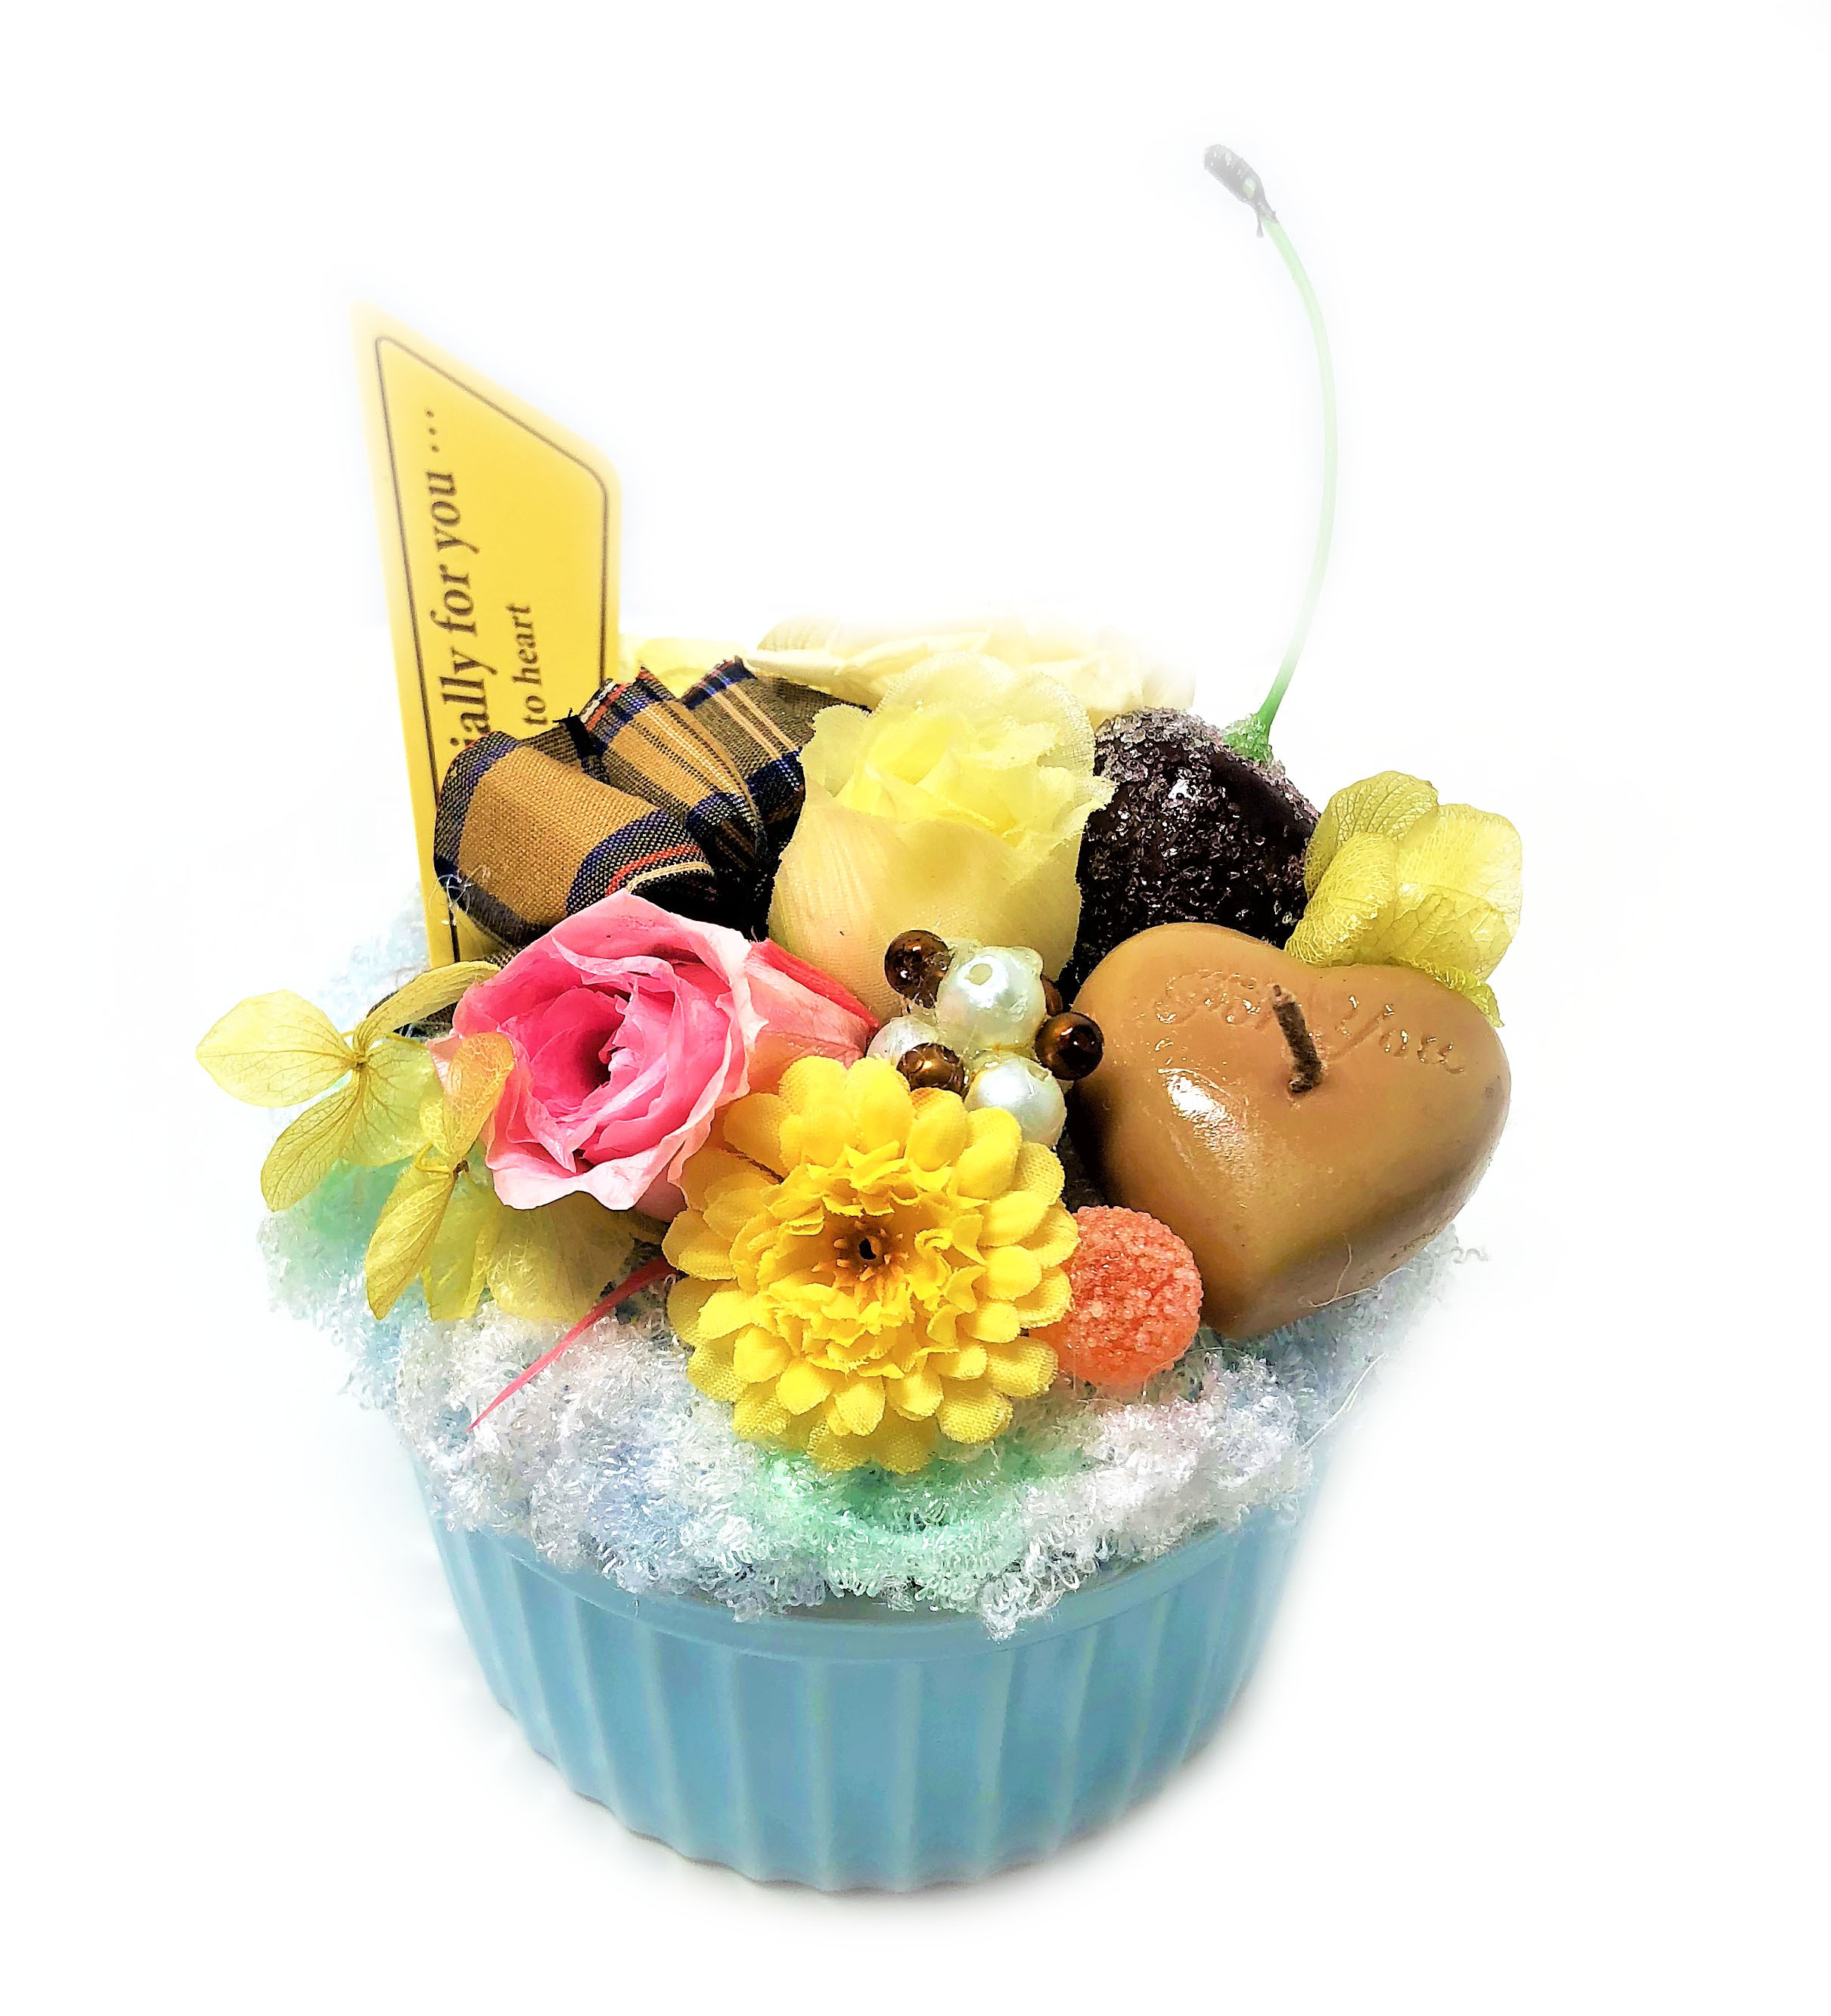 カップケーキ フラワーケーキ プリザーブドフラワー ハートチョコ Cupc T 花と雑貨 花千手 Hanasenju